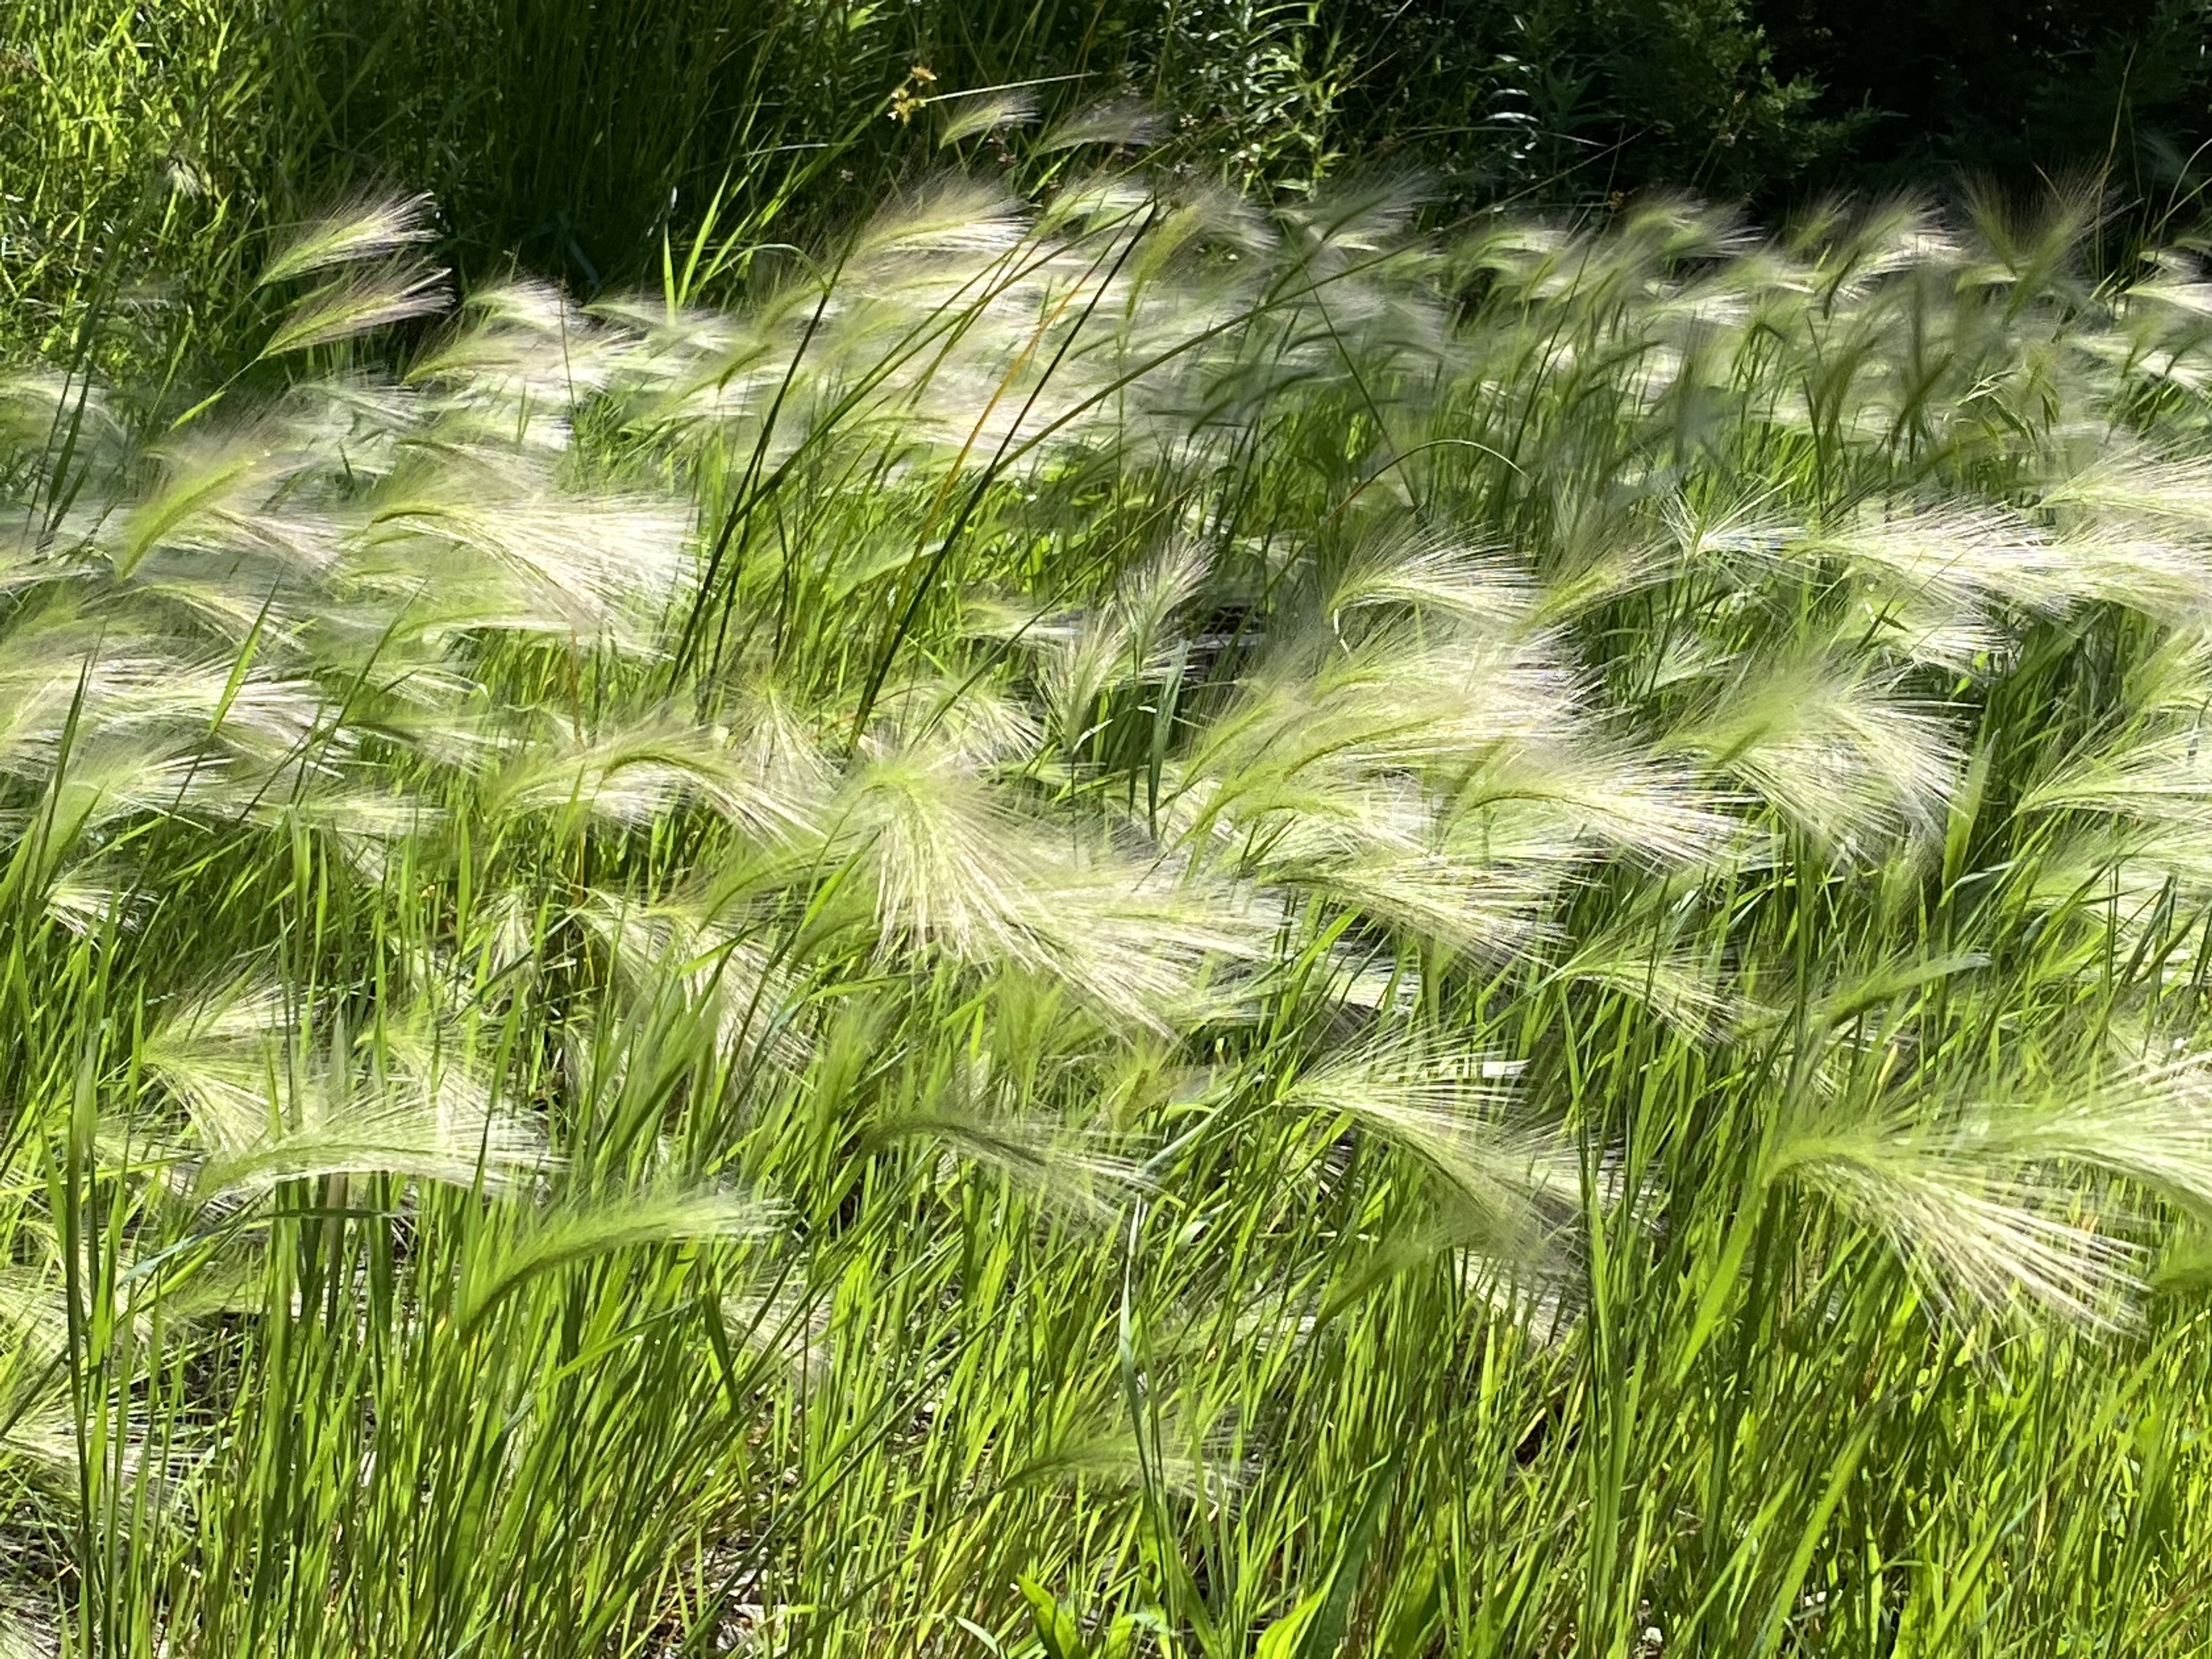 Foxtail barley in the sun